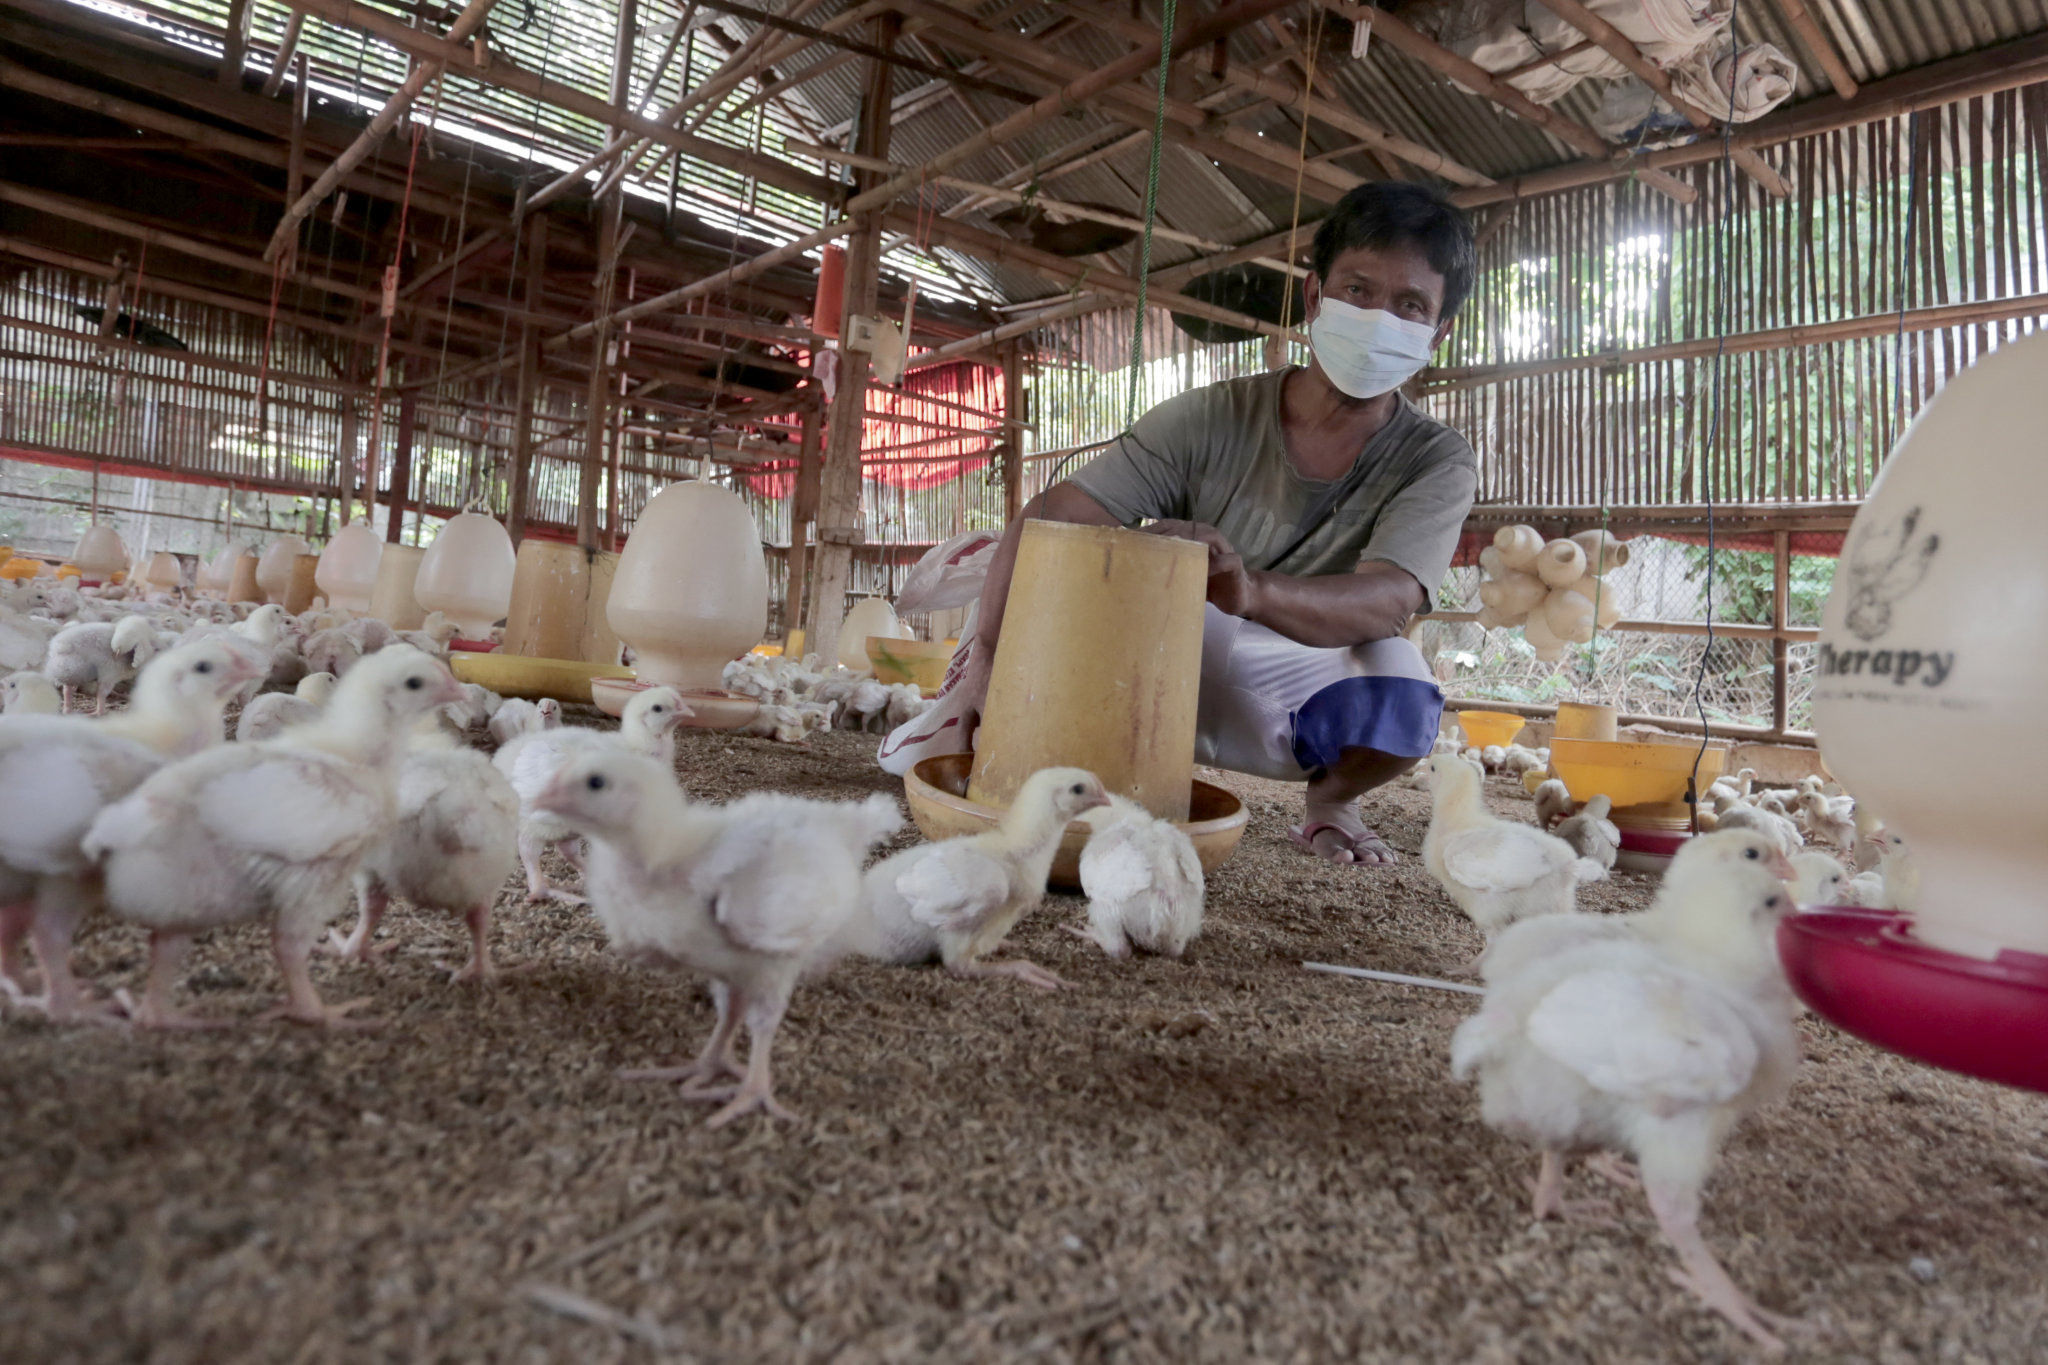 Peternak memberikan pakan konsentrat pada ayam potong di Leuwinanggung, Tapos, Depok, Jawa Barat, Selasa, 28 September 2021. Foto: Ismail Pohan/TrenAsia